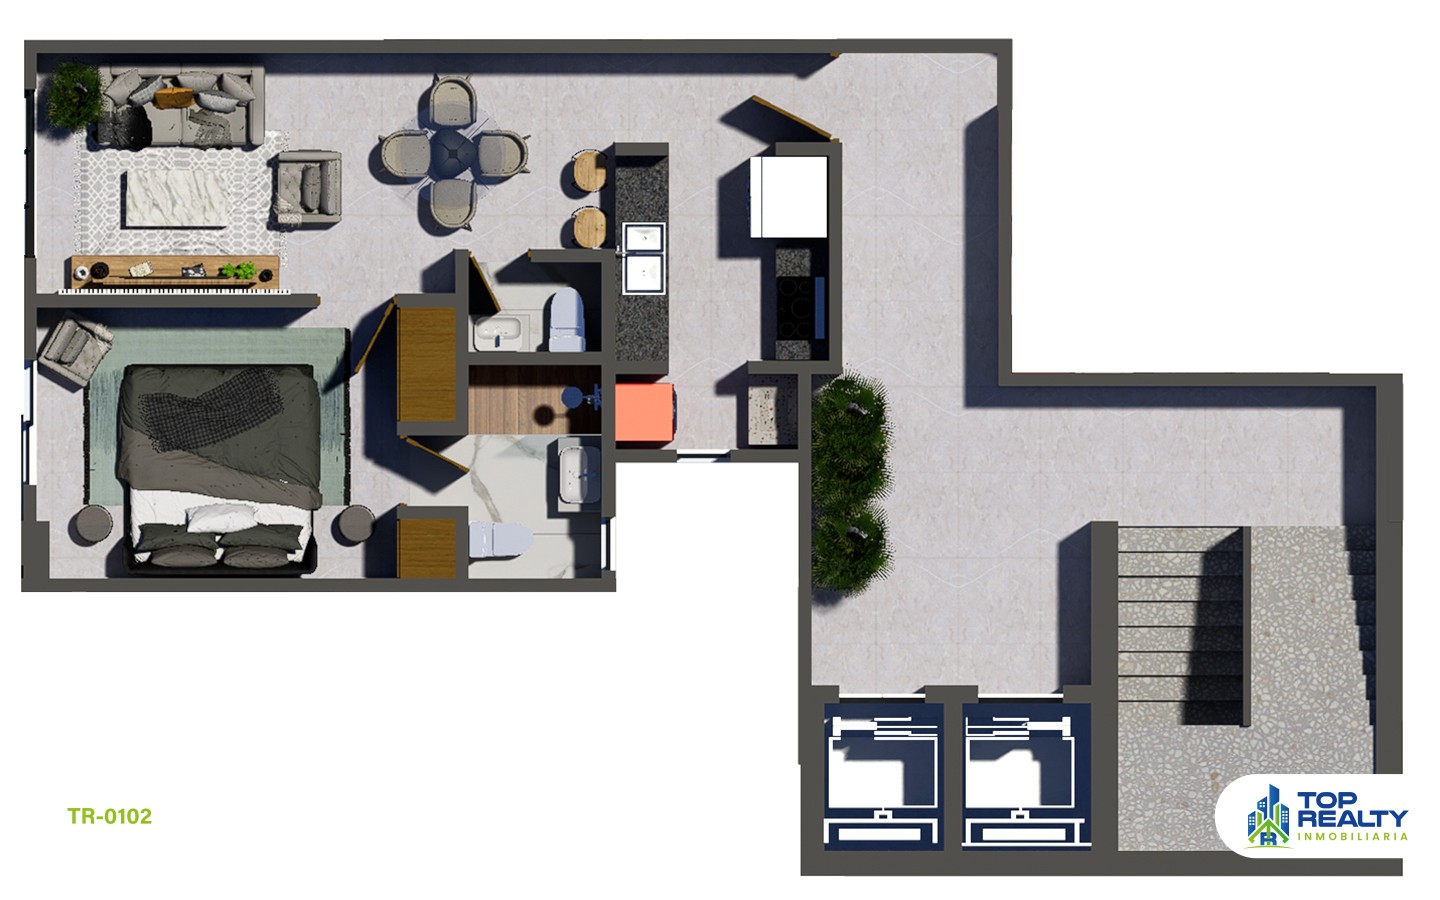 apartamentos - TR-0102 A: Lujo Íntimo: Apartamentos 1 Hab. con Amenidades Exclusivas (AirBnb) 3